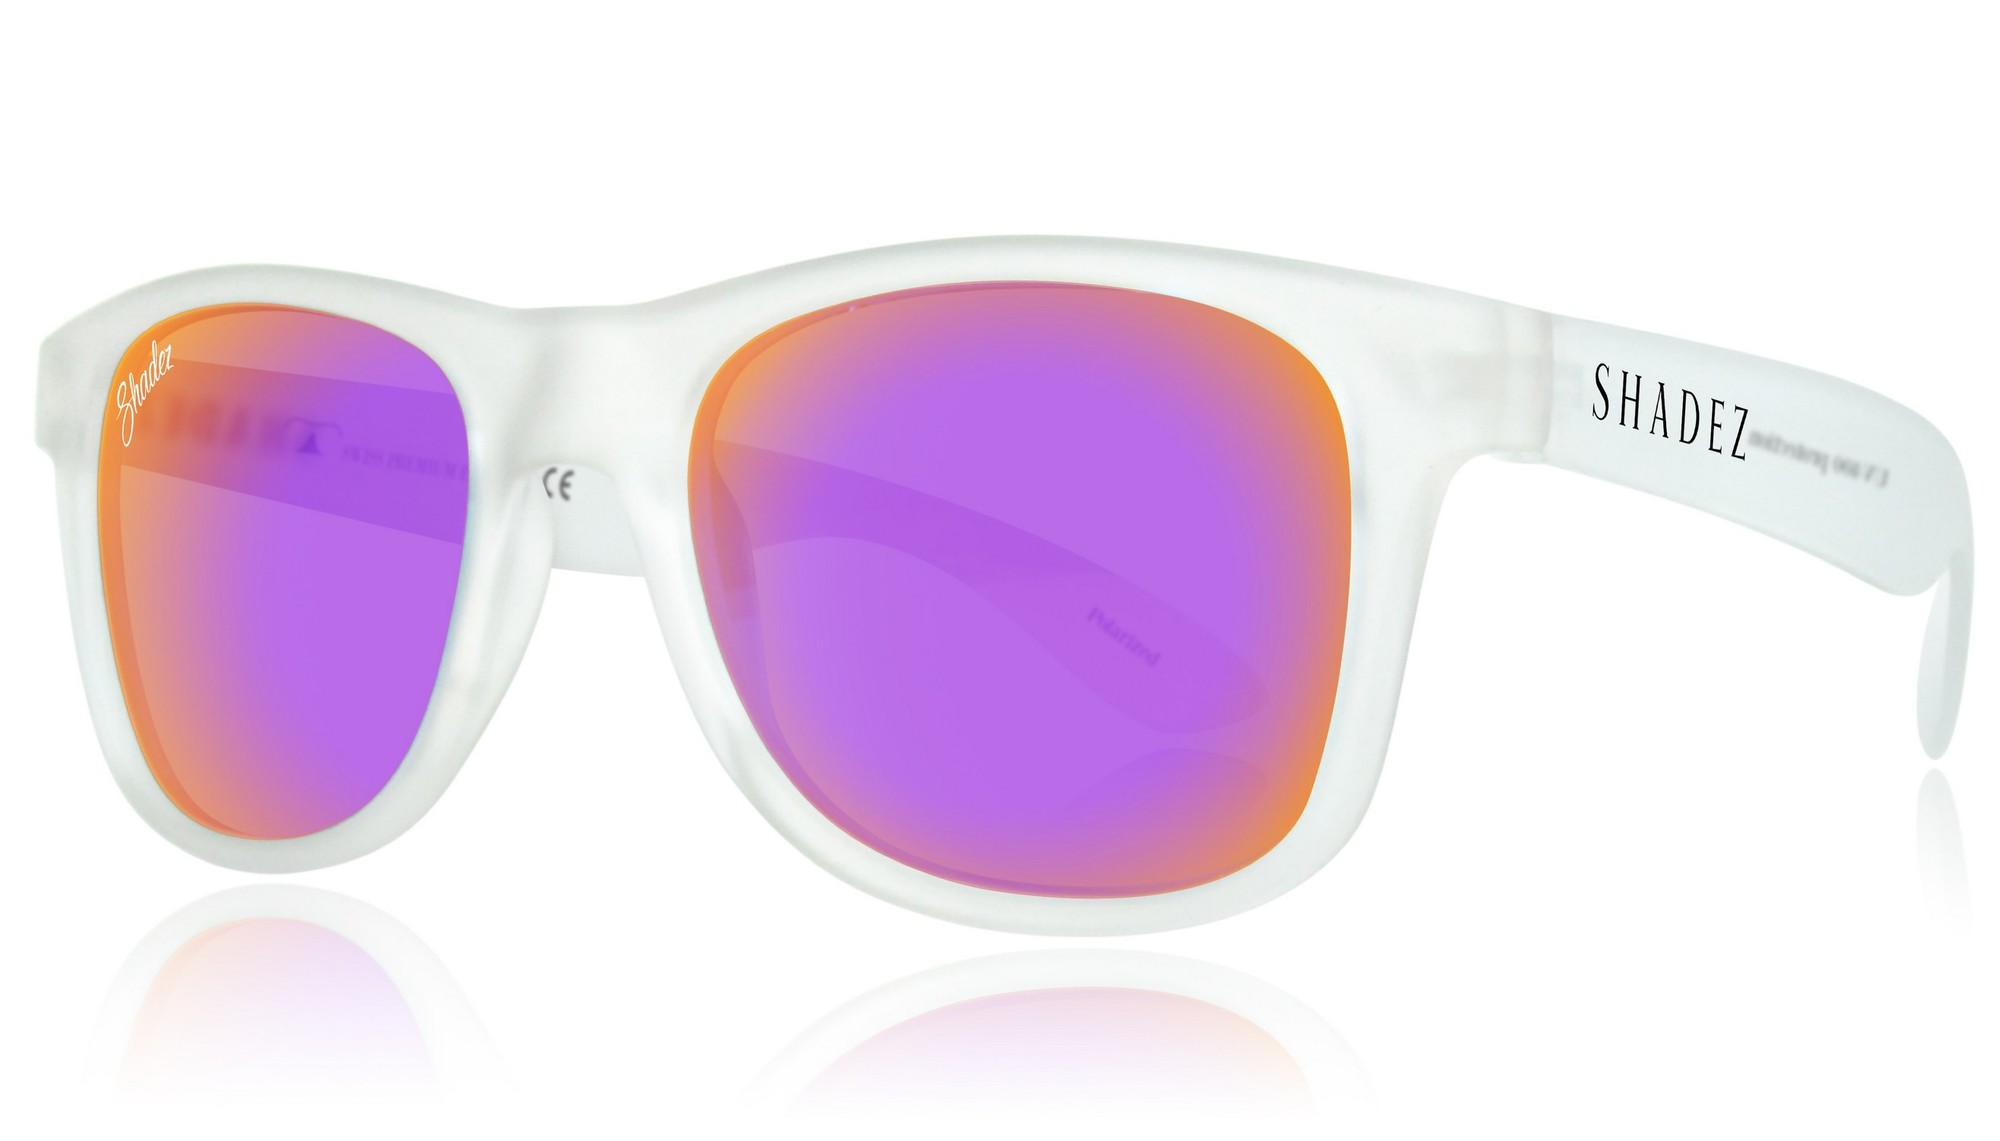 Shadez - polarisierte UV-Sonnenbrille für Erwachsene - Transparent/Violett